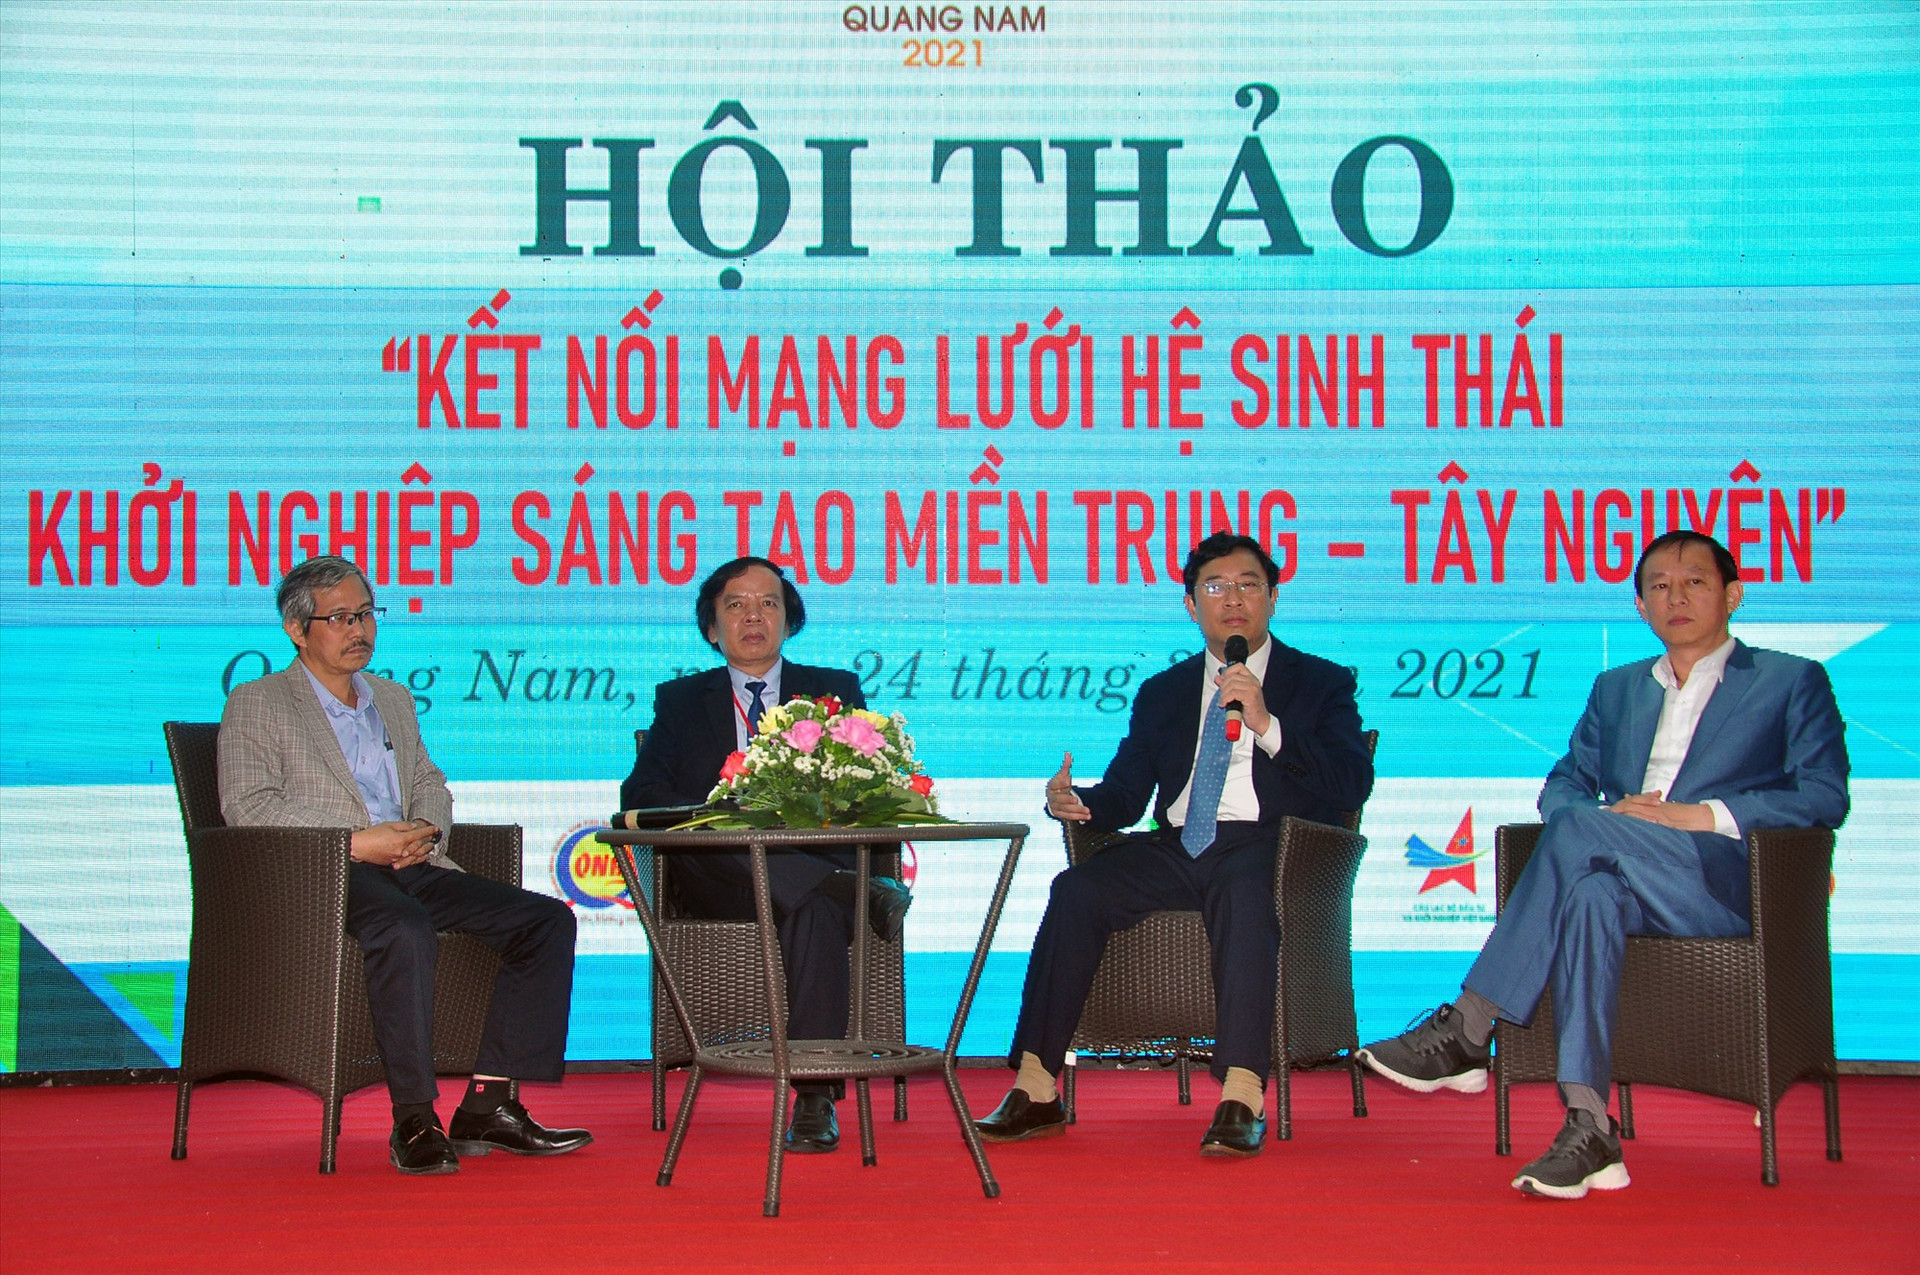 Các hội thảo, diễn đàn về khởi nghiệp sẽ được tổ chức trong suốt những ngày diễn ra TechFest Quảng Nam 2022. Trong ảnh: Hội thảo kết nối mạng lưới hệ sinh thái khởi nghiệp sáng tạo miền Trung - Tây Nguyên. Ảnh: VINH ANH